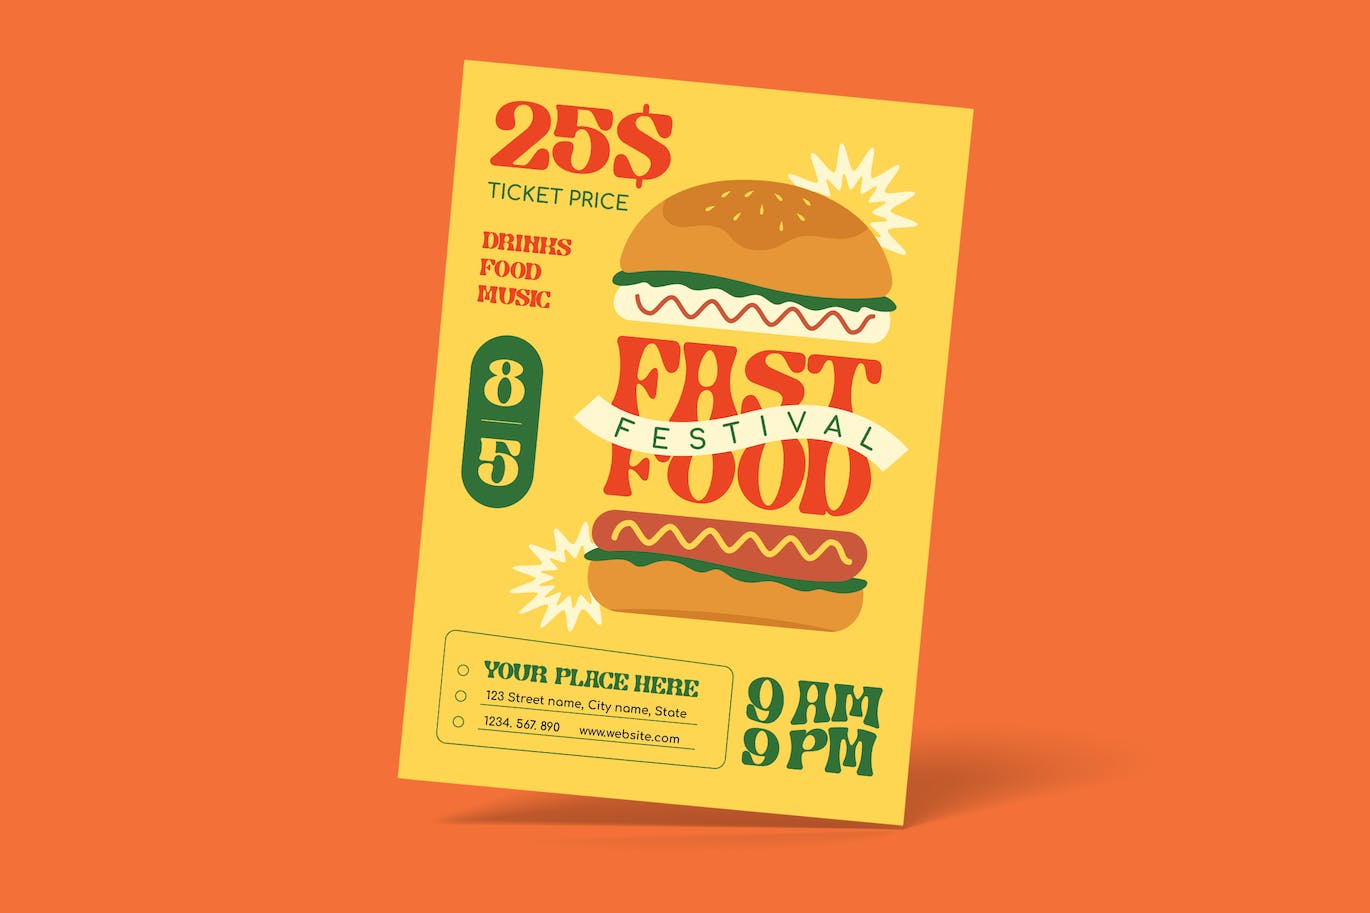 西式快餐食品宣传单模板 Fast Food Festival Flyer 设计素材 第1张